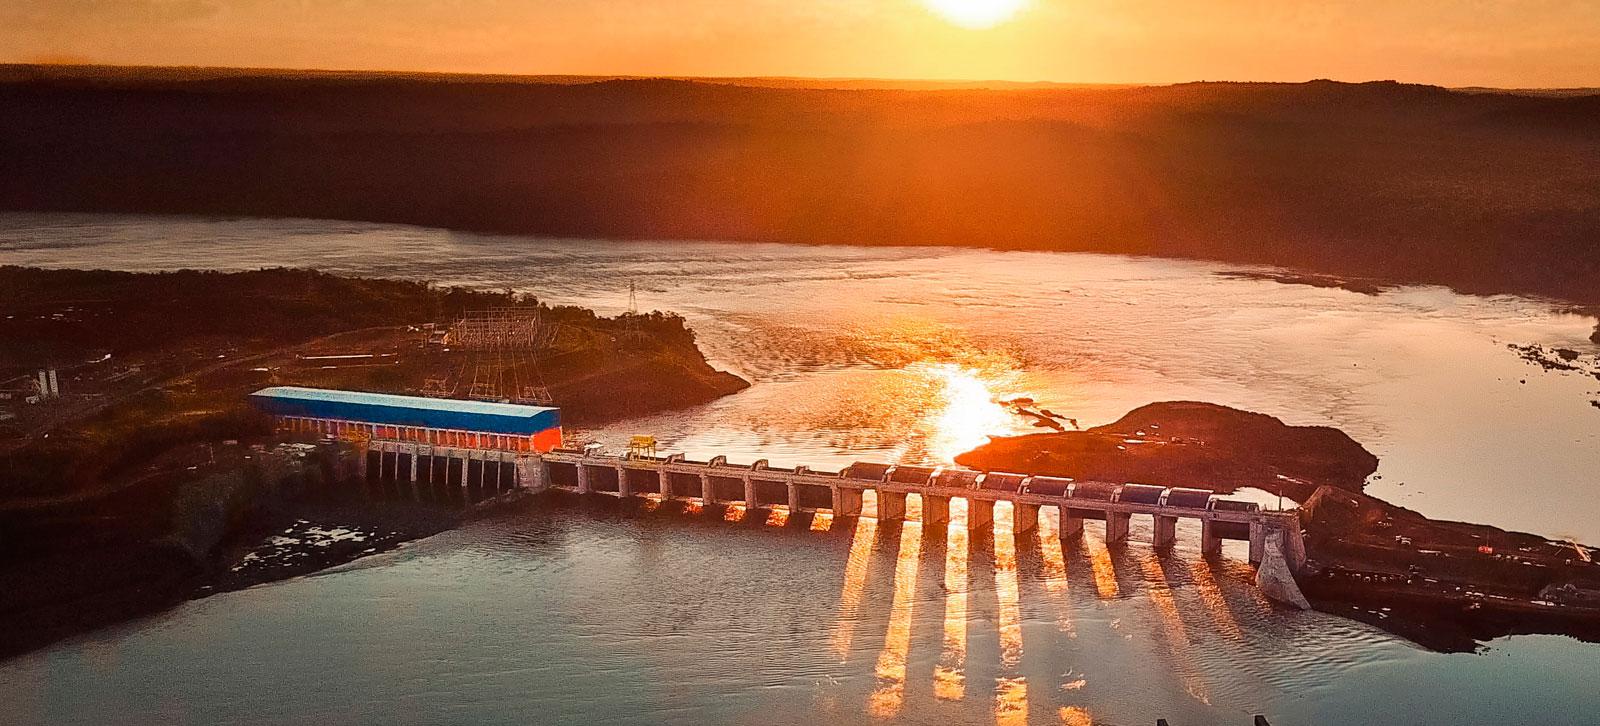 Baixo Igauaçu hydroelectric plant / Brazil